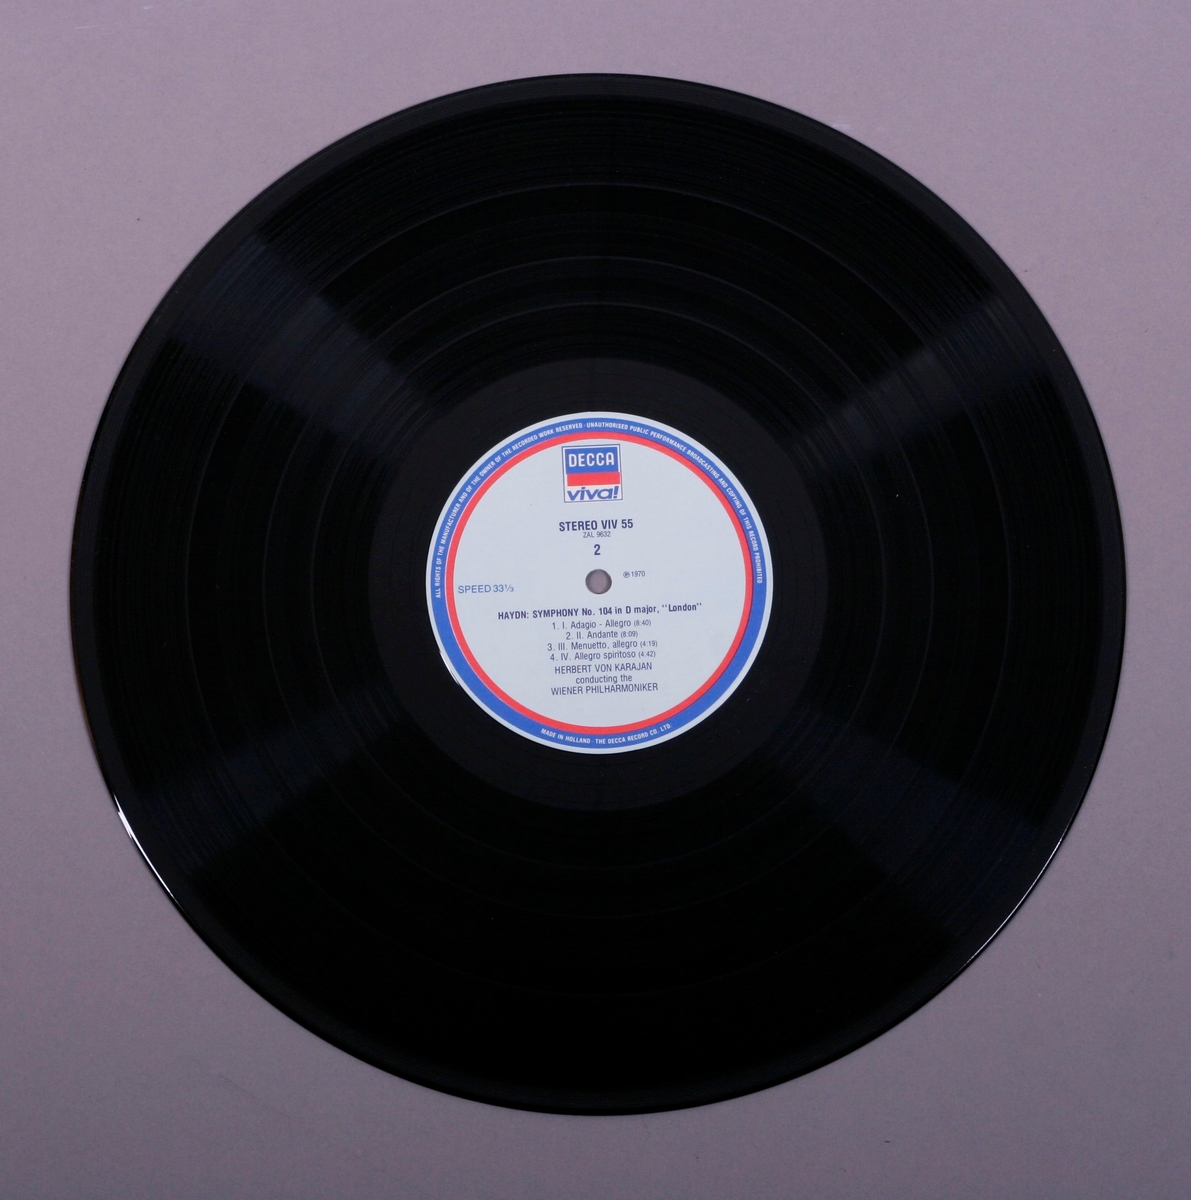 Grammofonplate i svart vinyl og plateomslag i papp. Plata ligger i en papirlomme fôret med plast.